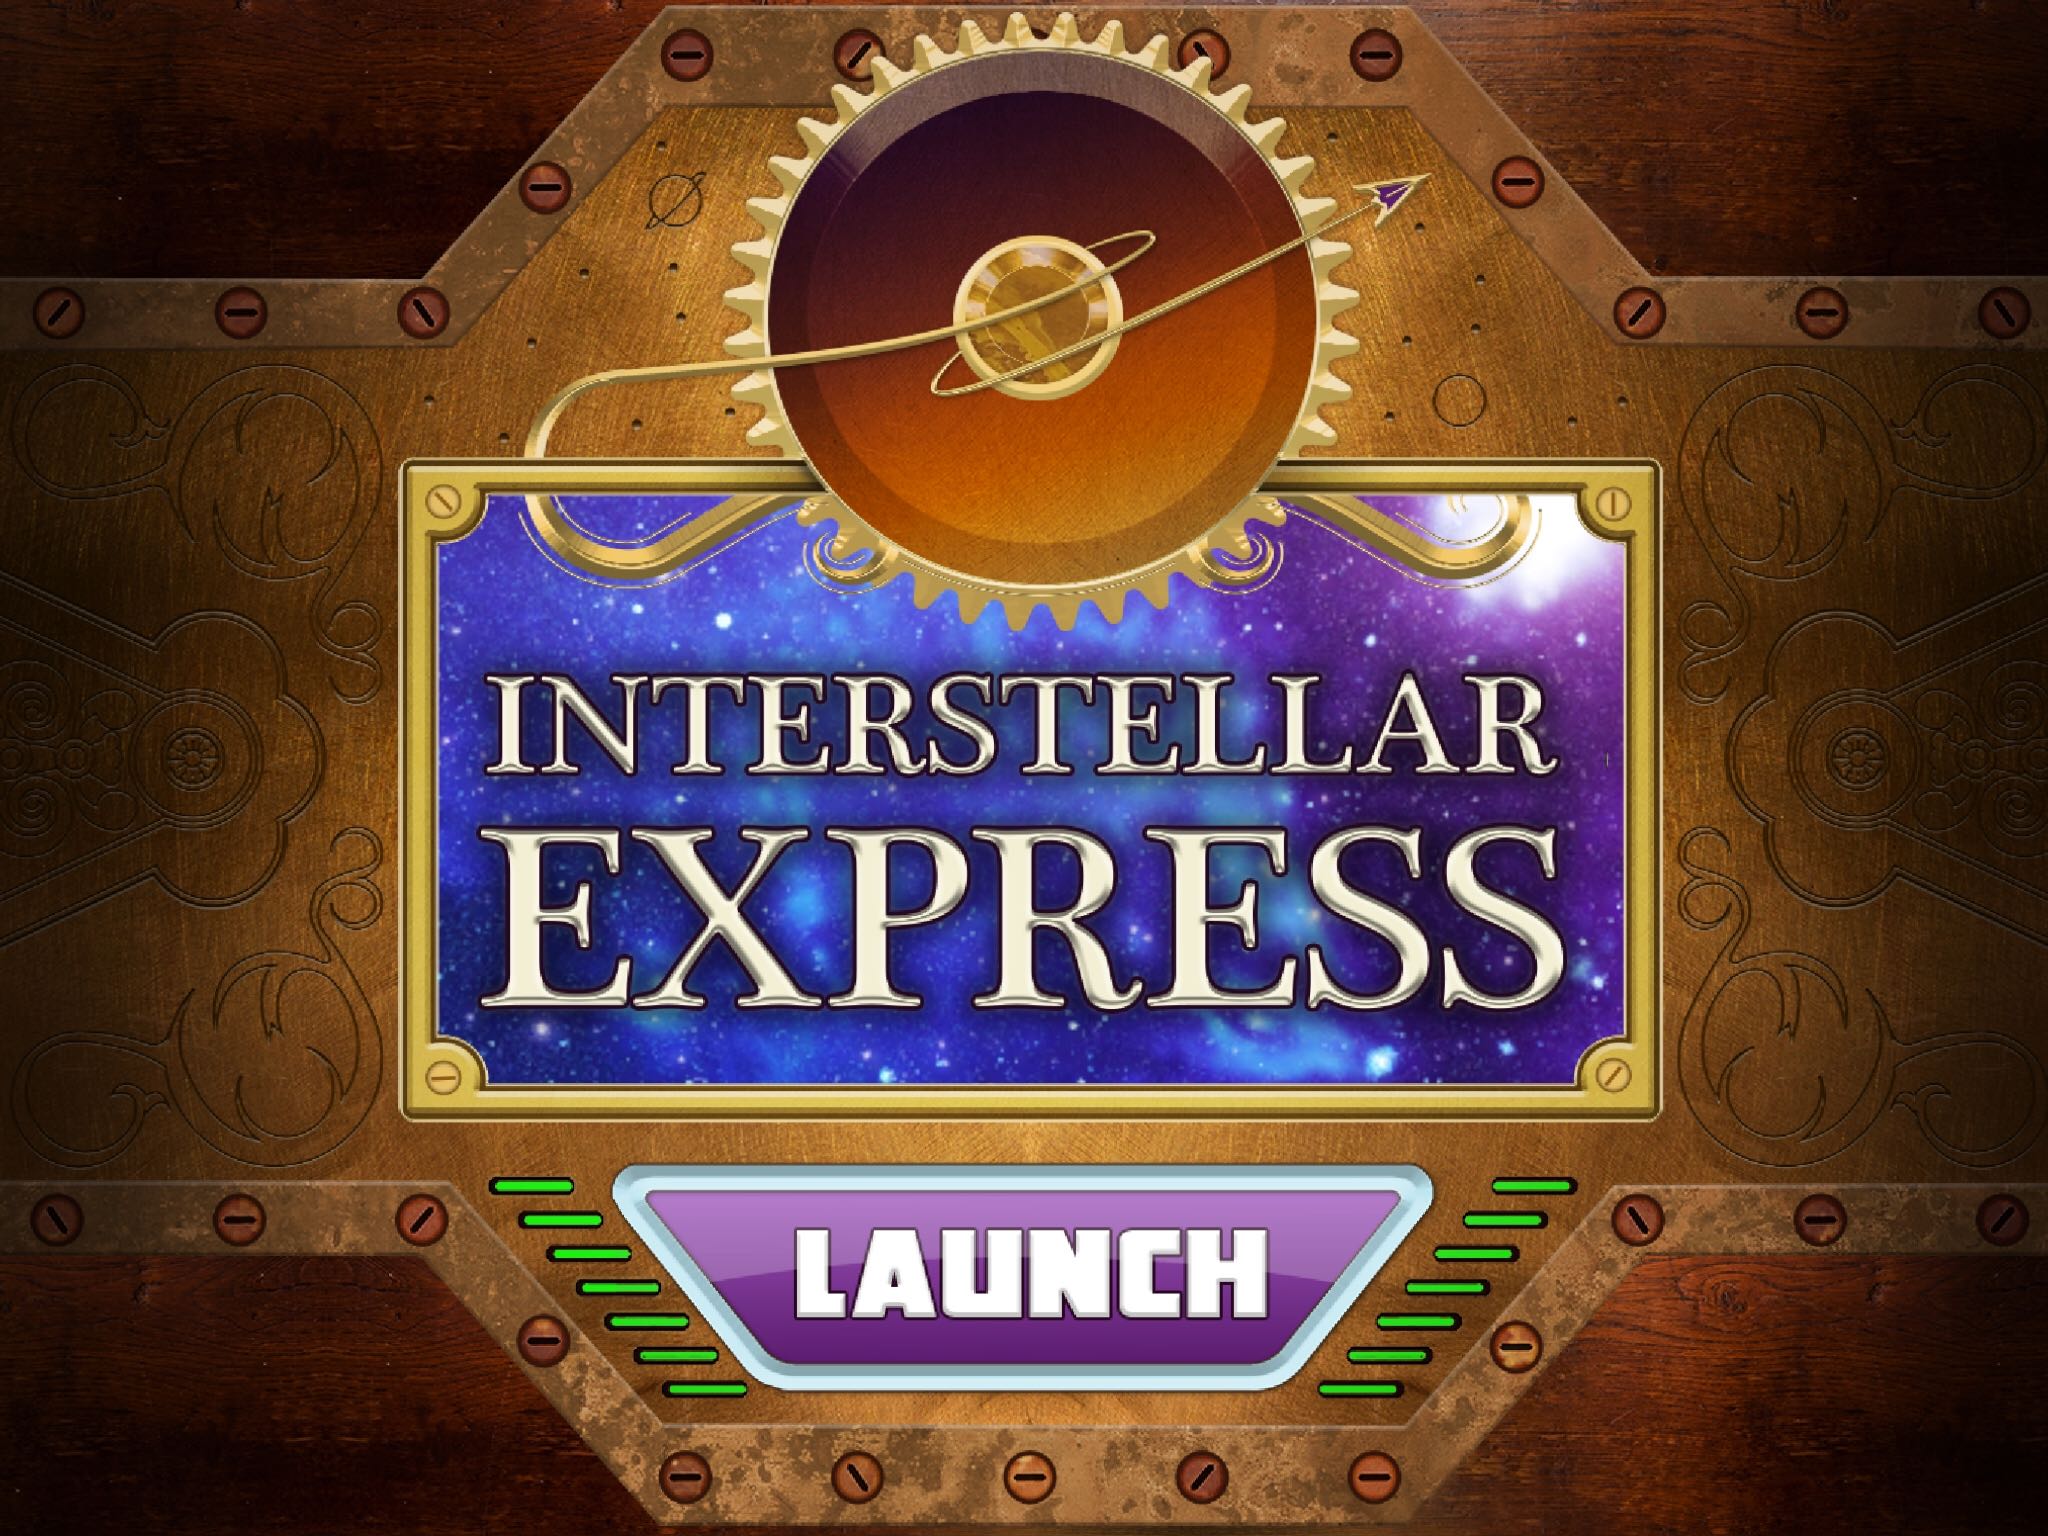 Interstellar Express app